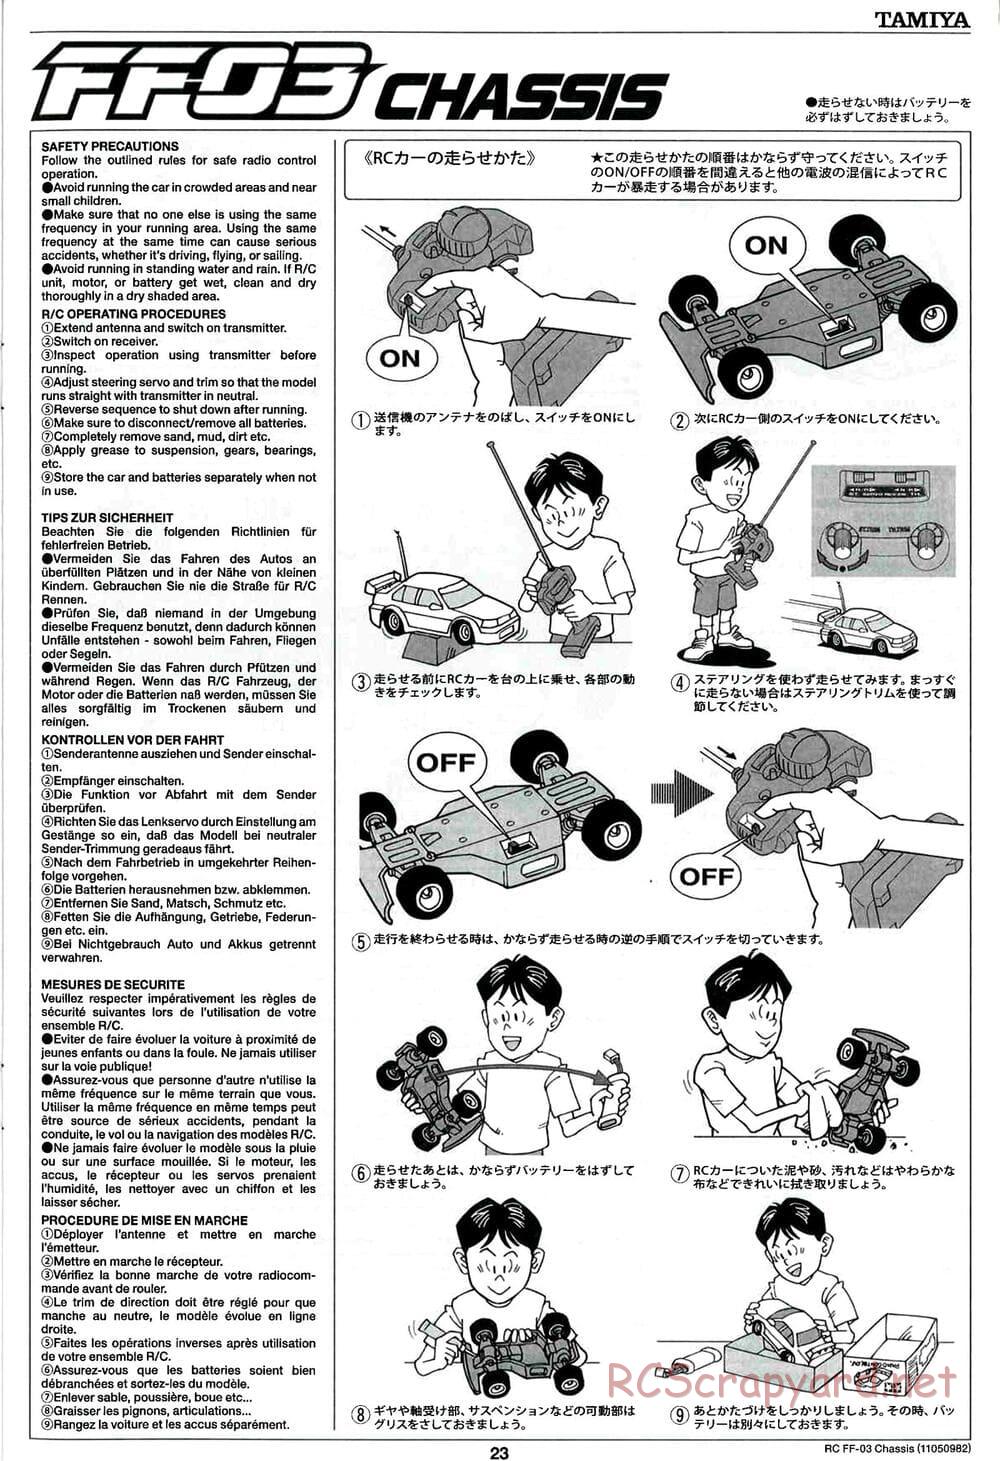 Tamiya - Honda CR-Z - FF-03 Chassis - Manual - Page 23